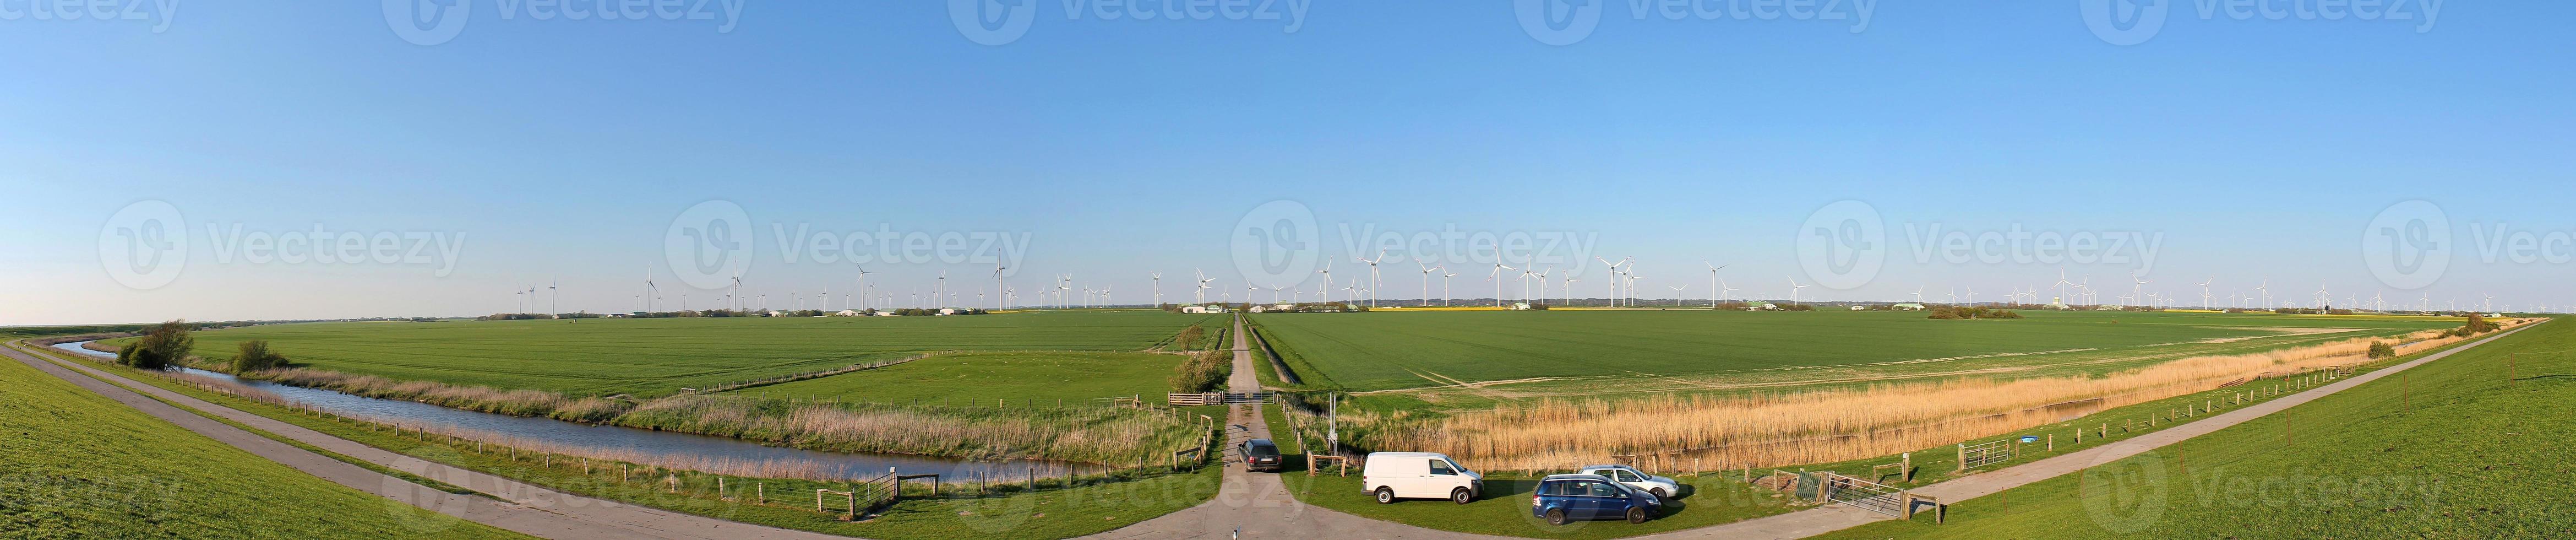 vue panoramique sur les éoliennes à énergie alternative dans un parc éolien en europe du nord photo